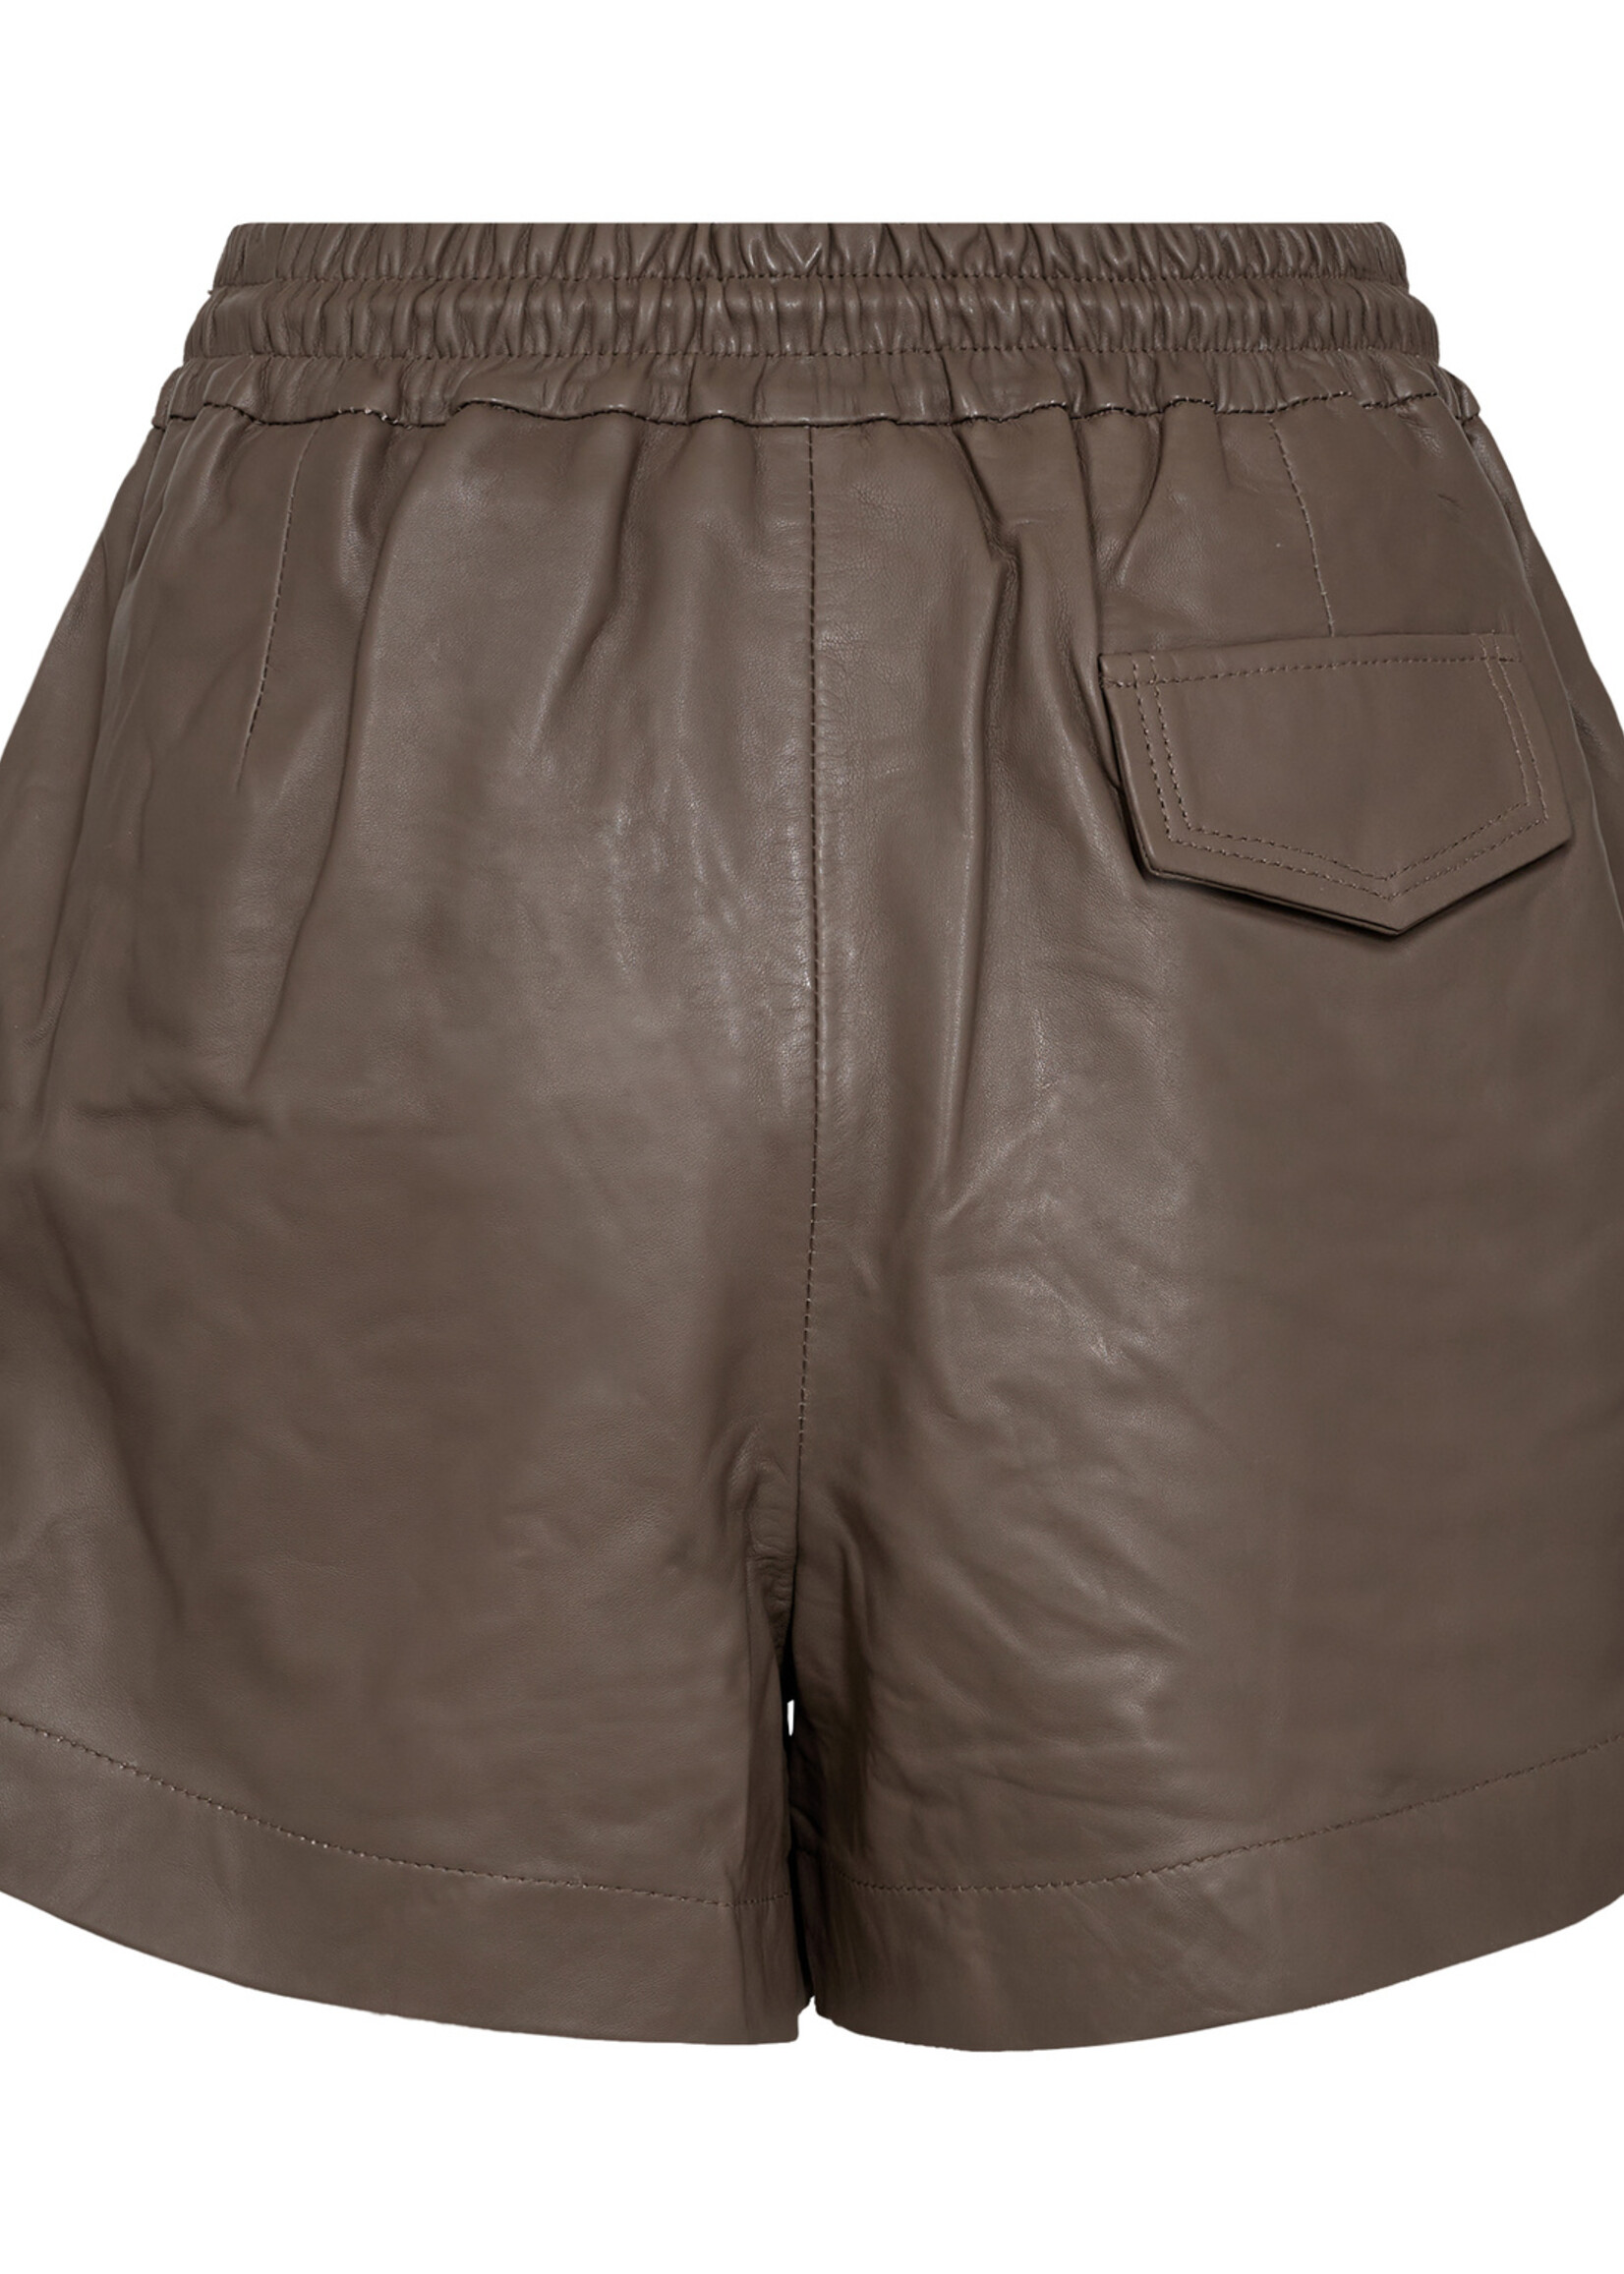 Co'Couture New PhoebeCC Leather Shorts - Elephant